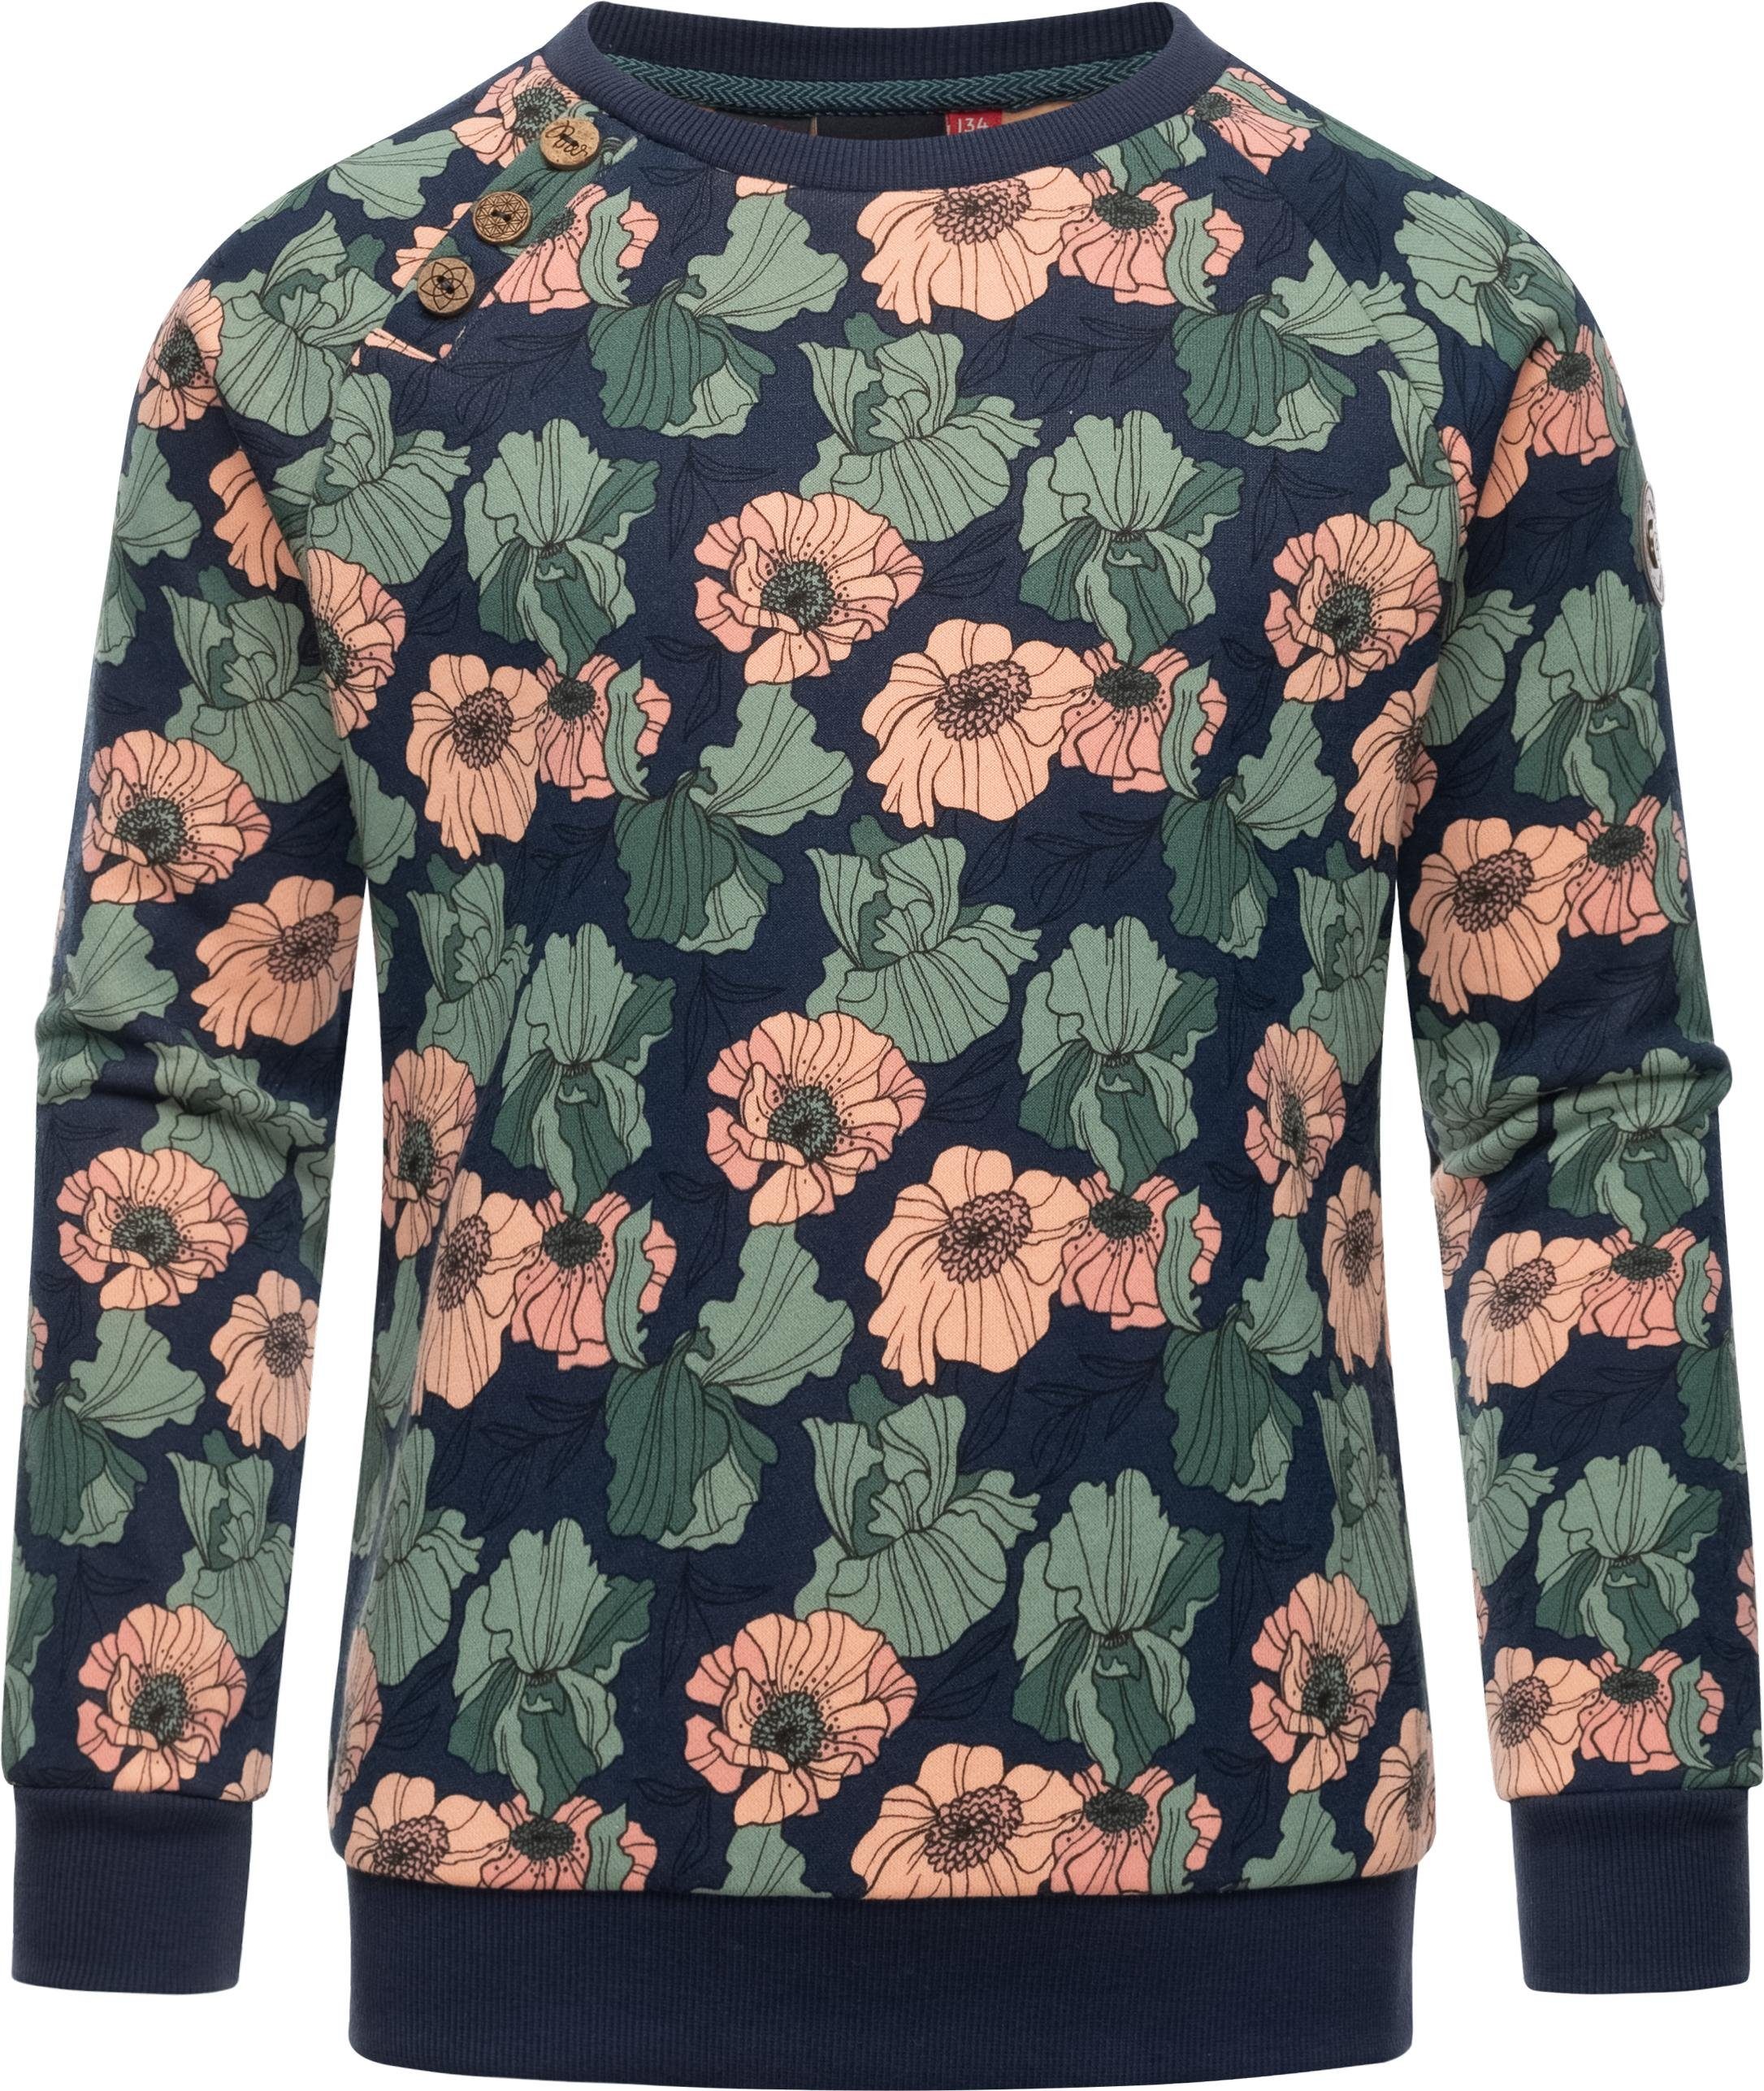 Ragwear Sweater Darinka Freesia stylisches Mädchen Sweatshirt mit  Blumenmuster, Bequemer Baumwollsweater top kombinierbar zu lässigen Looks